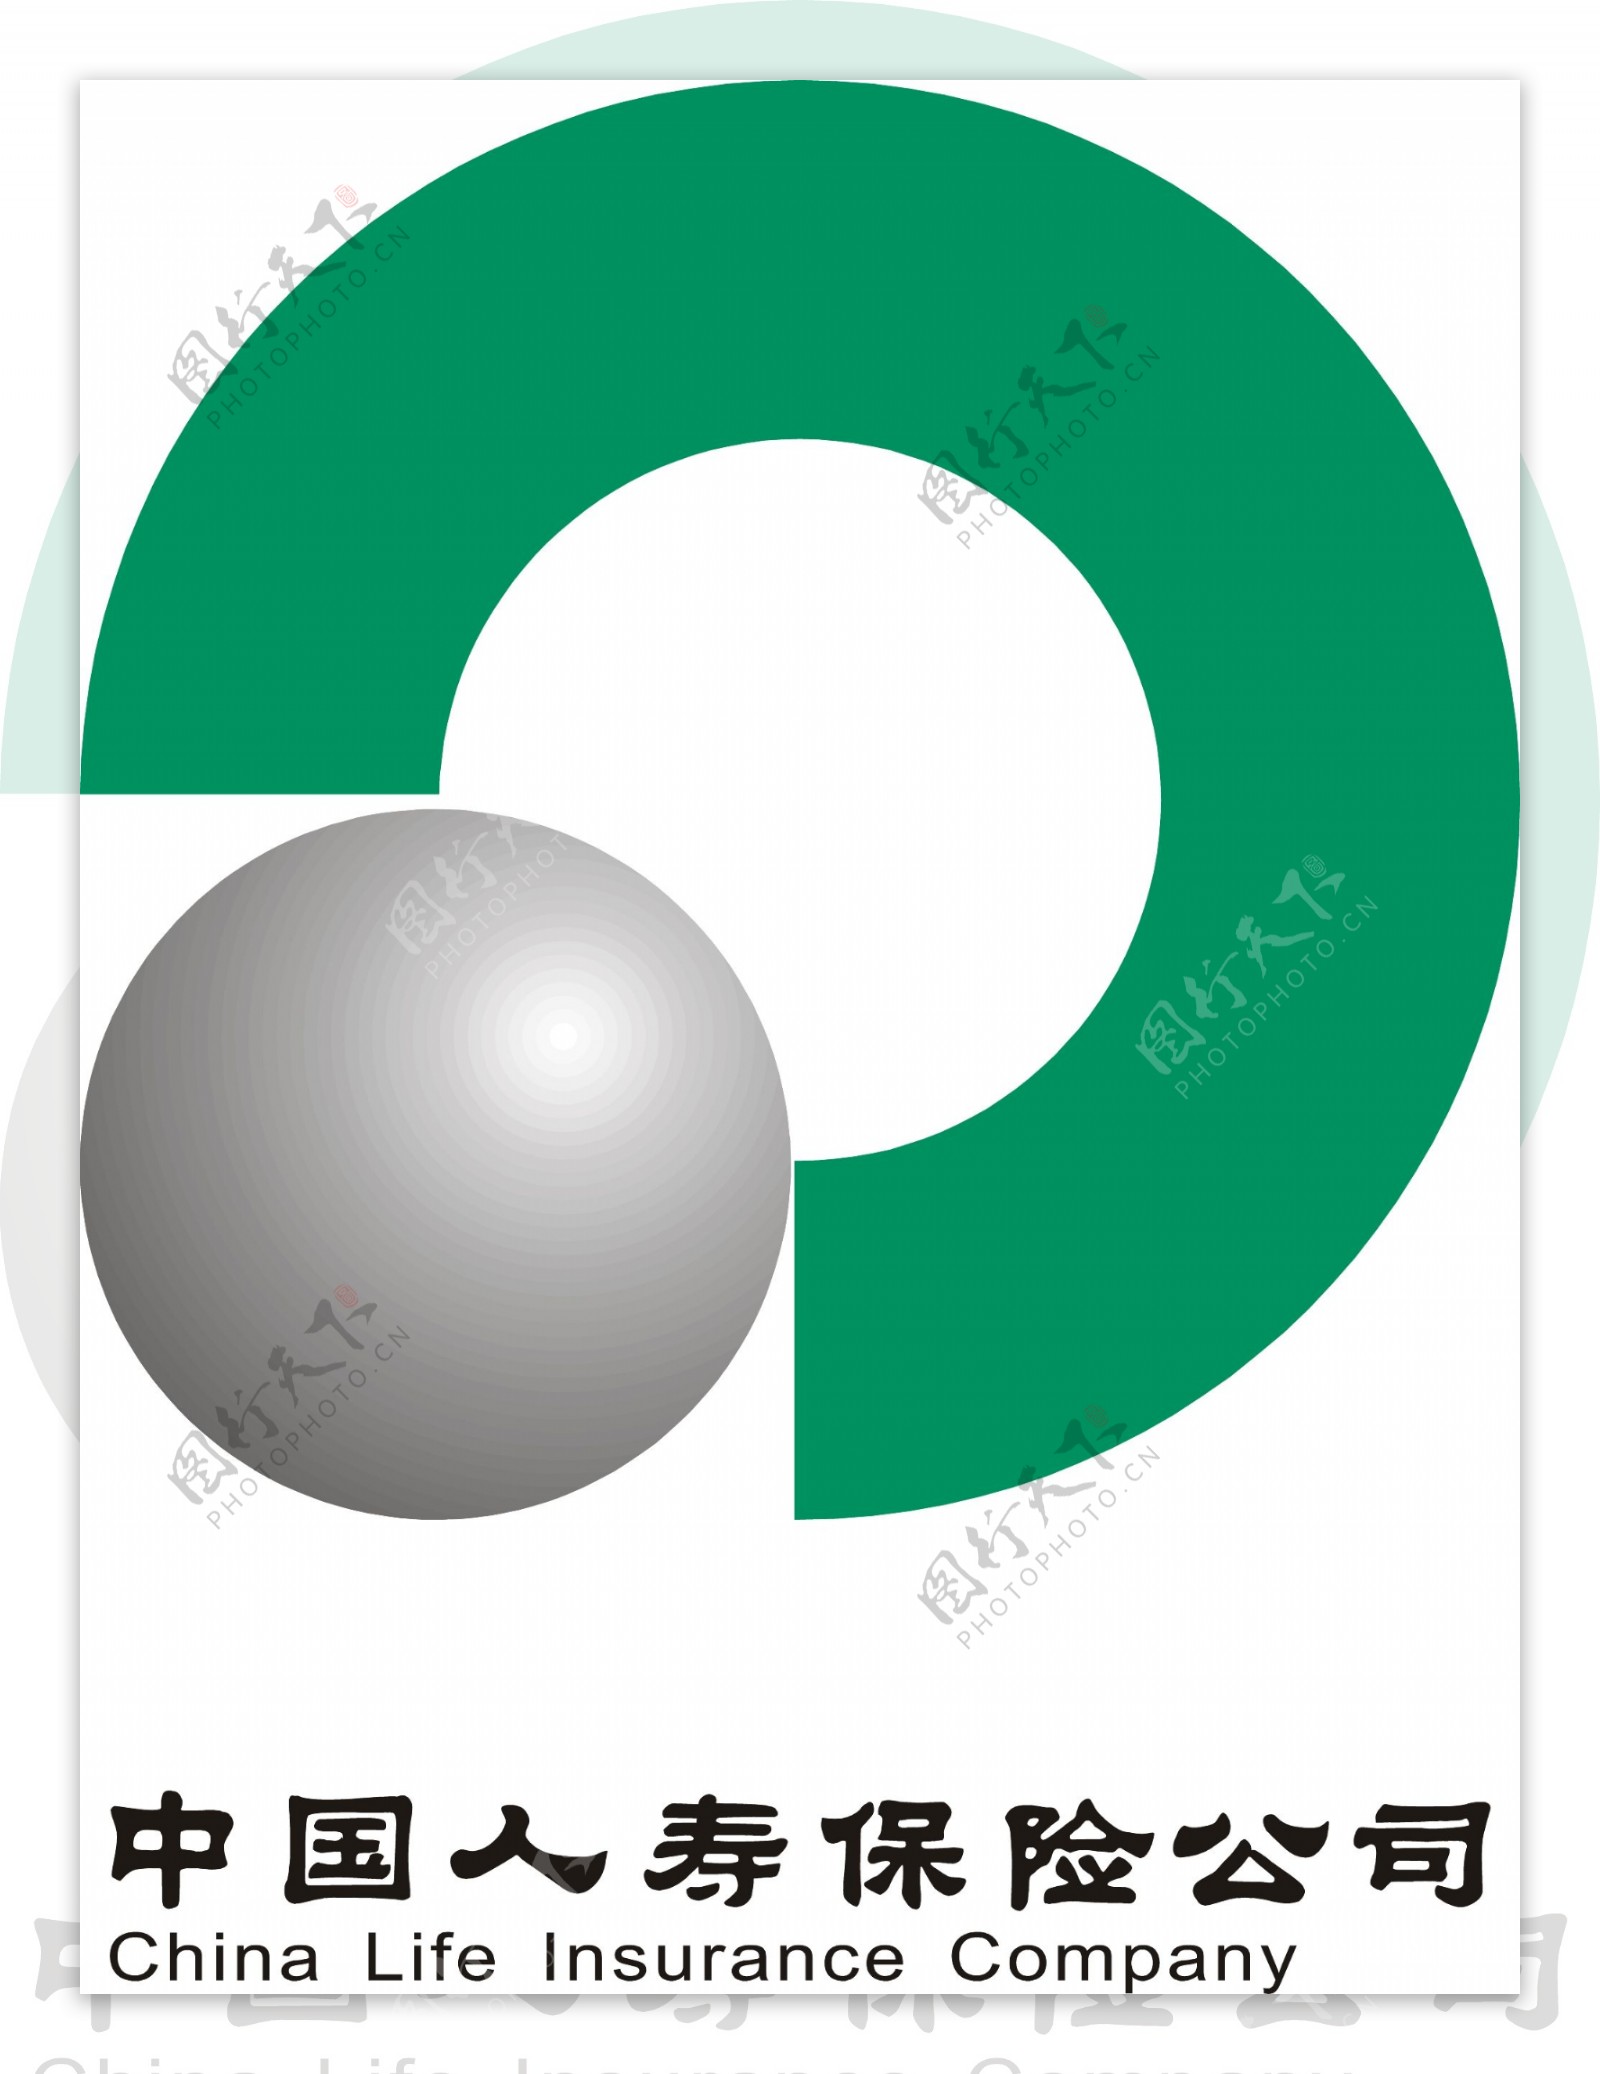 中国人寿保险公司标志图片